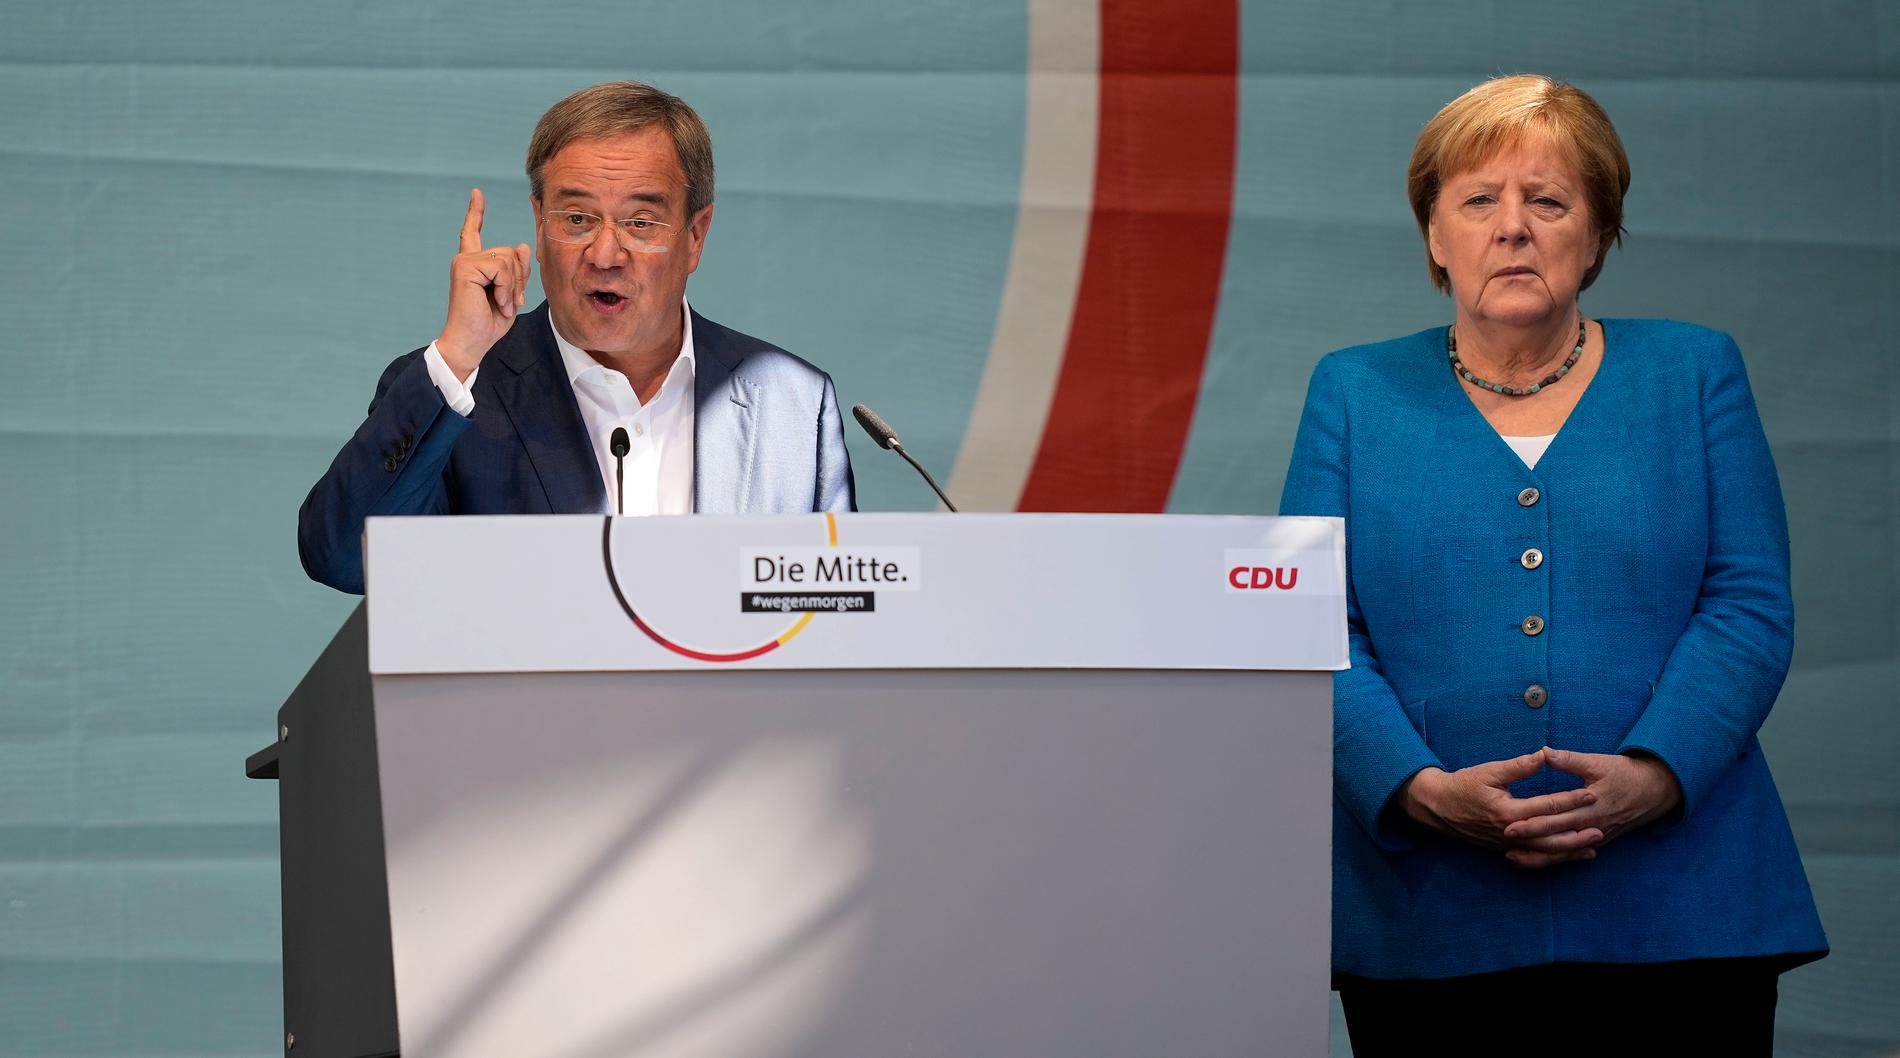 Angela Merkel talade till väljarna i Aachen och uppmanade dem att rösta på Armin Laschet.